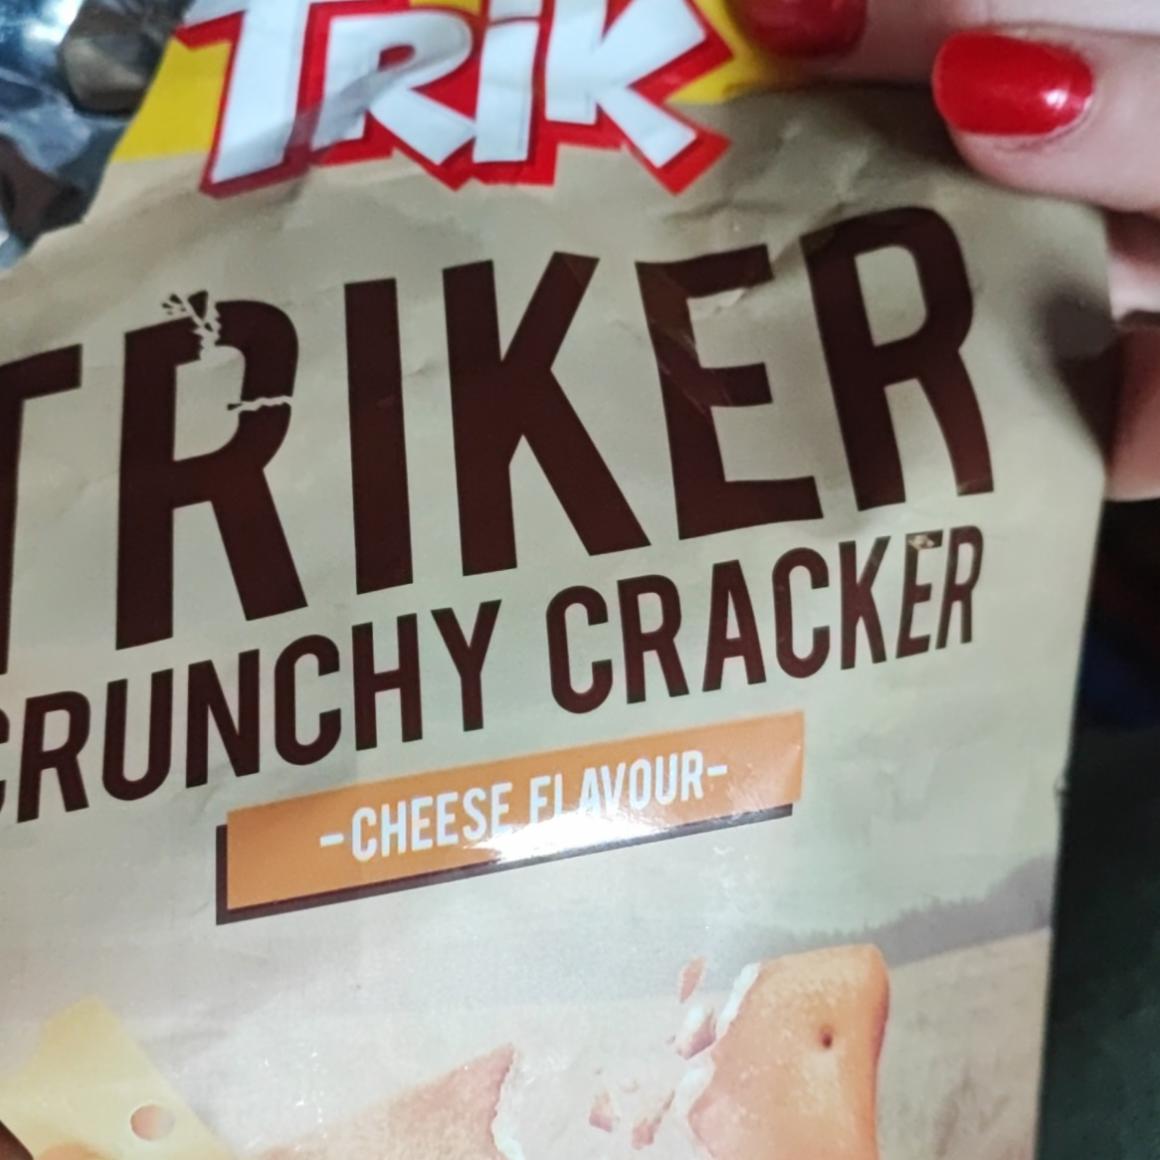 Fotografie - Triker Crunchy Cracker Cheese Flavour Trik